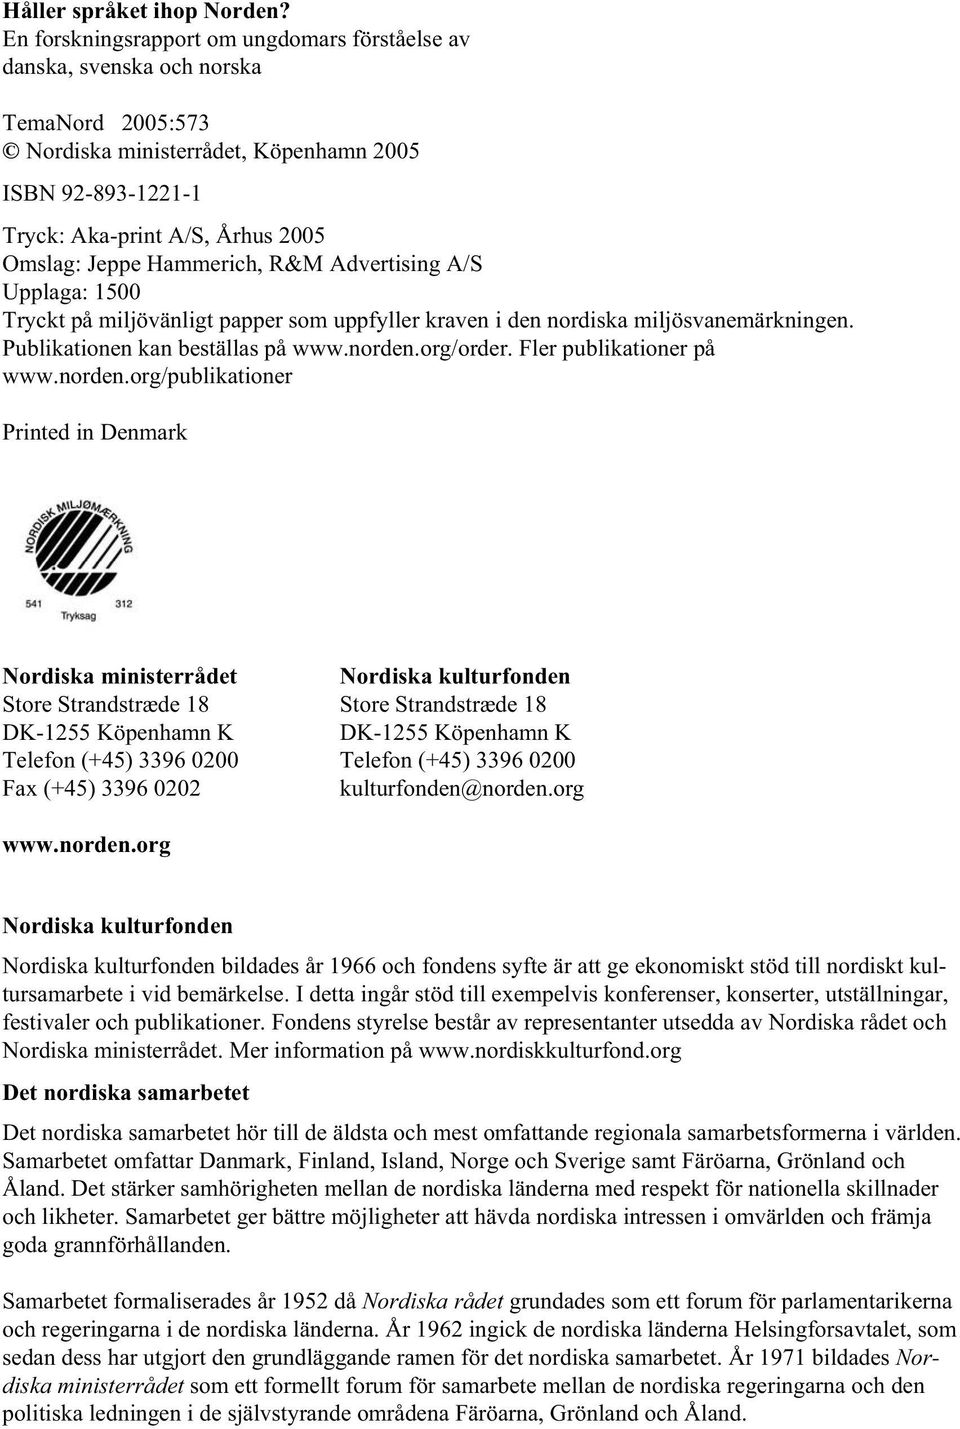 Hammerich, R&M Advertising A/S Upplaga: 1500 Tryckt på miljövänligt papper som uppfyller kraven i den nordiska miljösvanemärkningen. Publikationen kan beställas på www.norden.org/order.